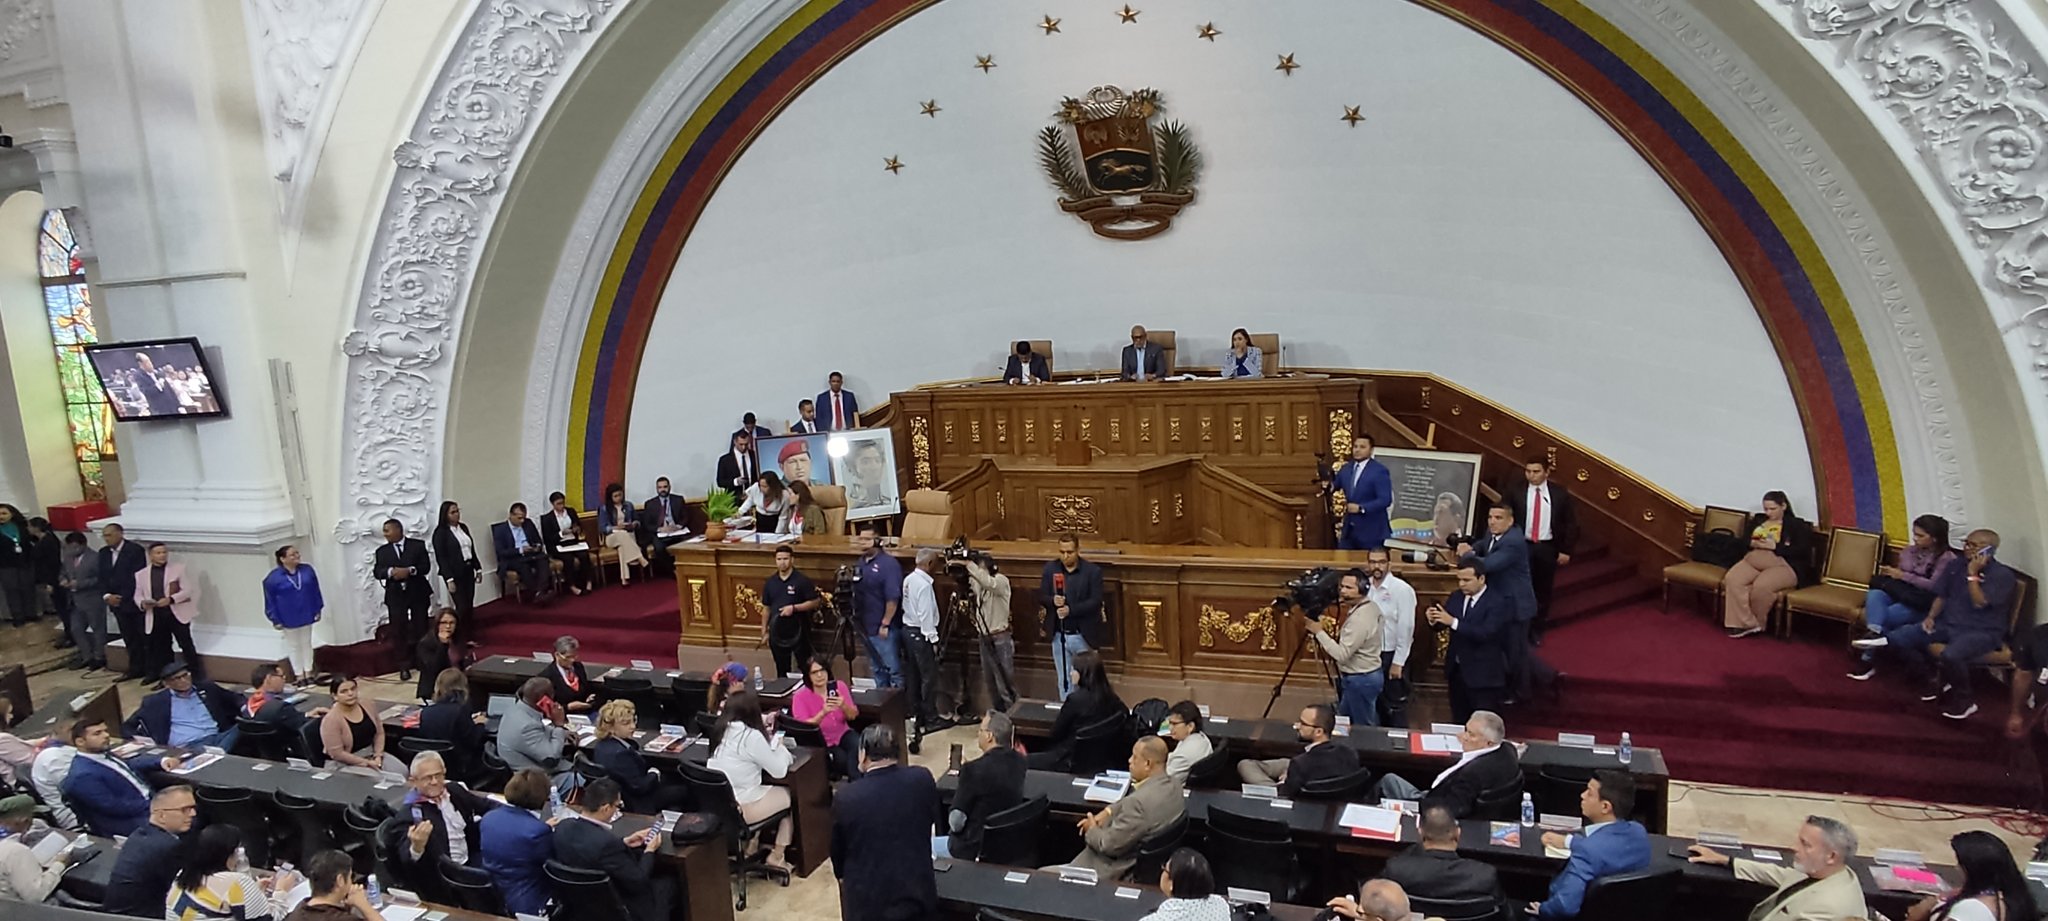 Asamblea Nacional chavista nombró nuevo CNE con rectores cercanos al régimen de Maduro